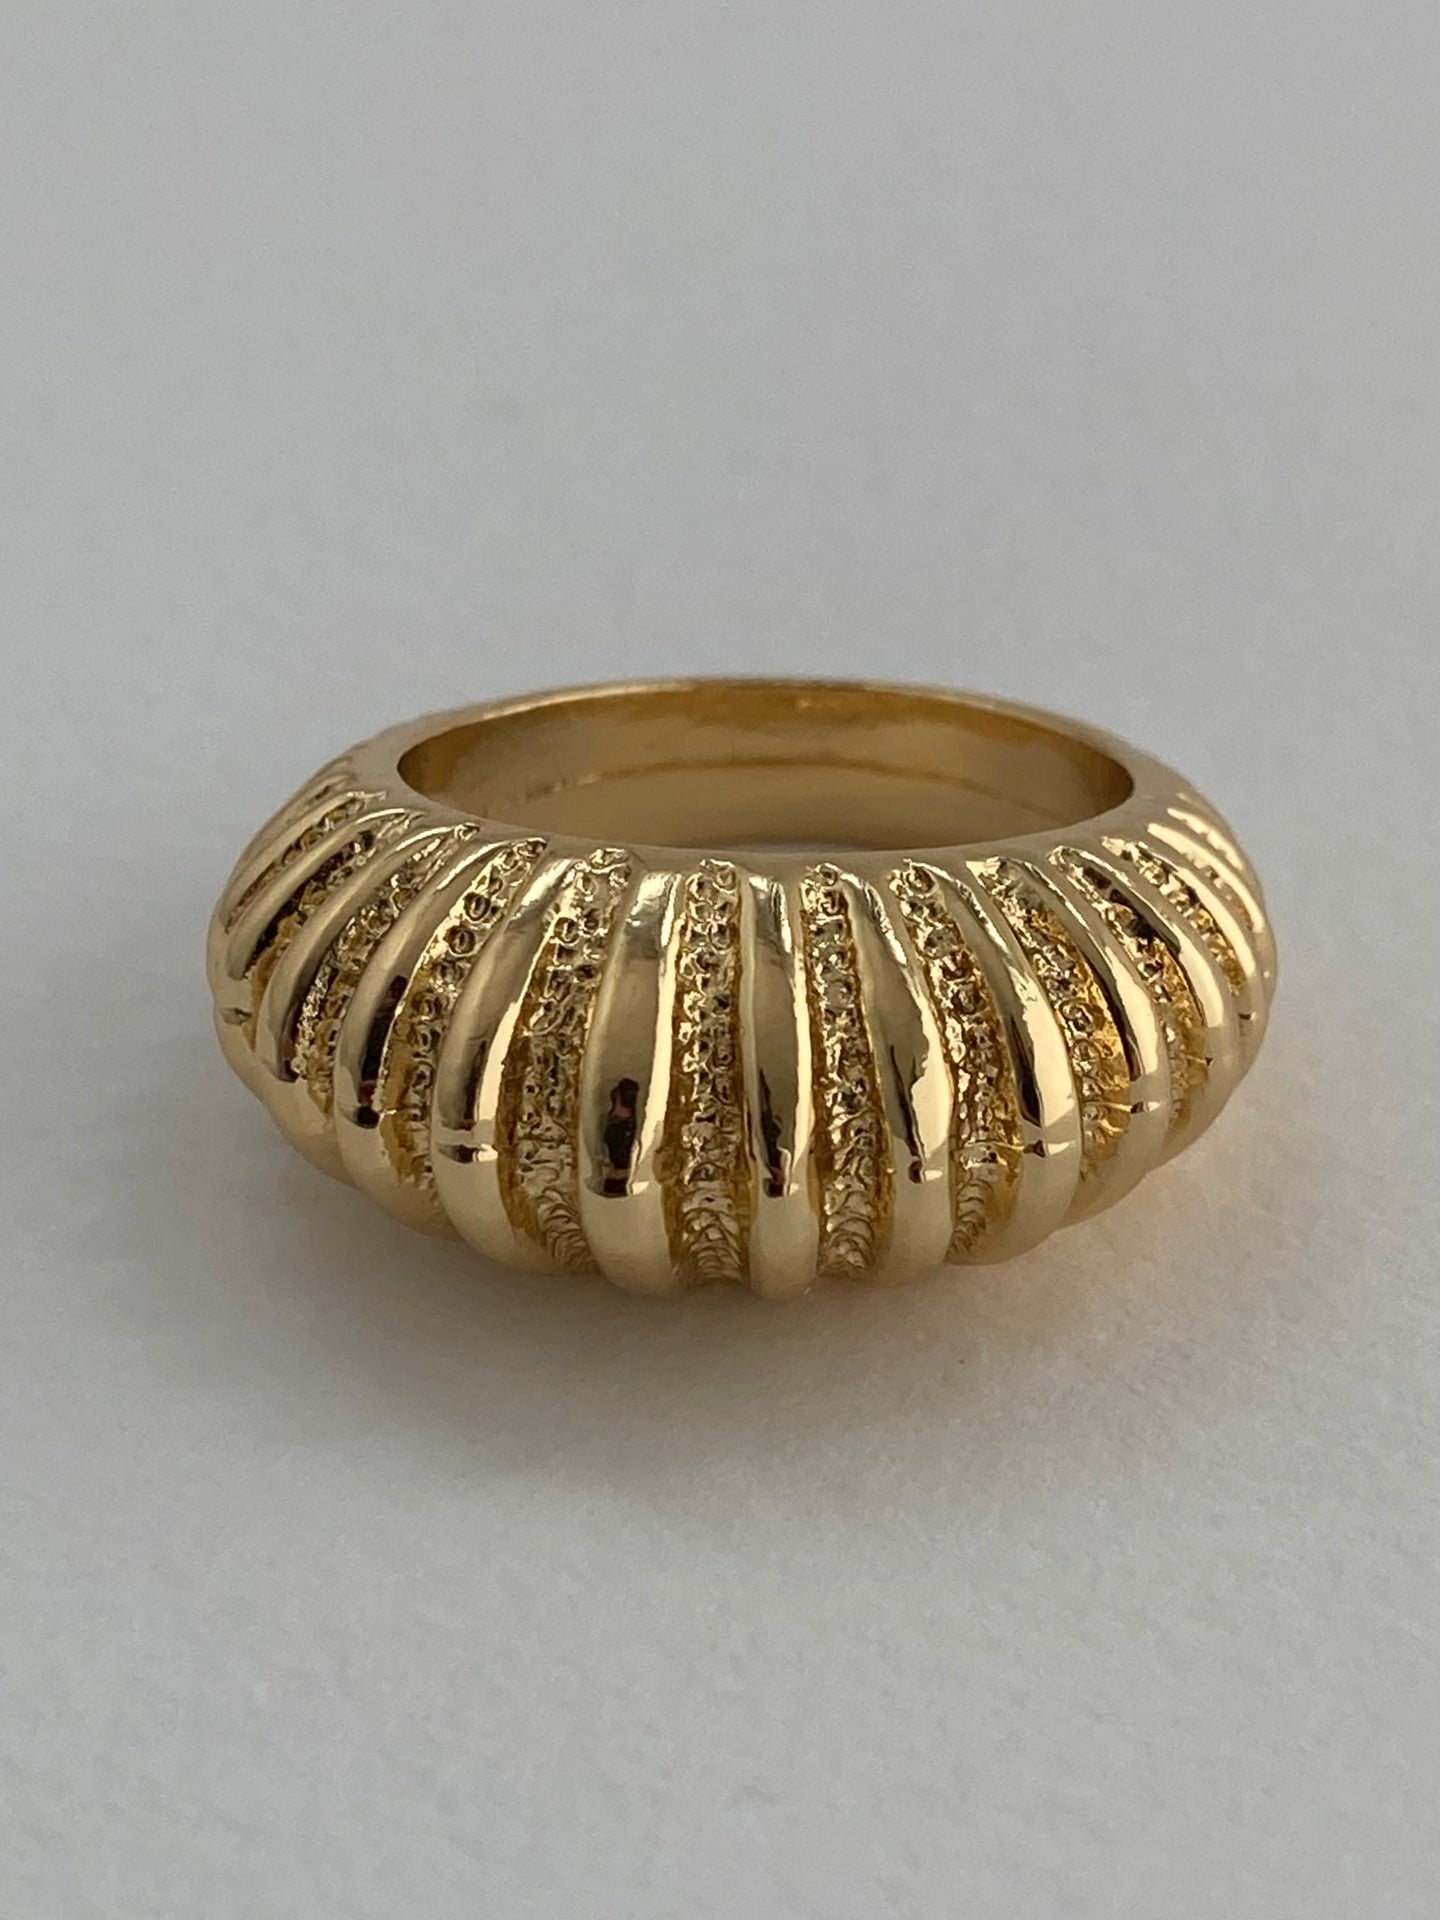 The Voor Ring